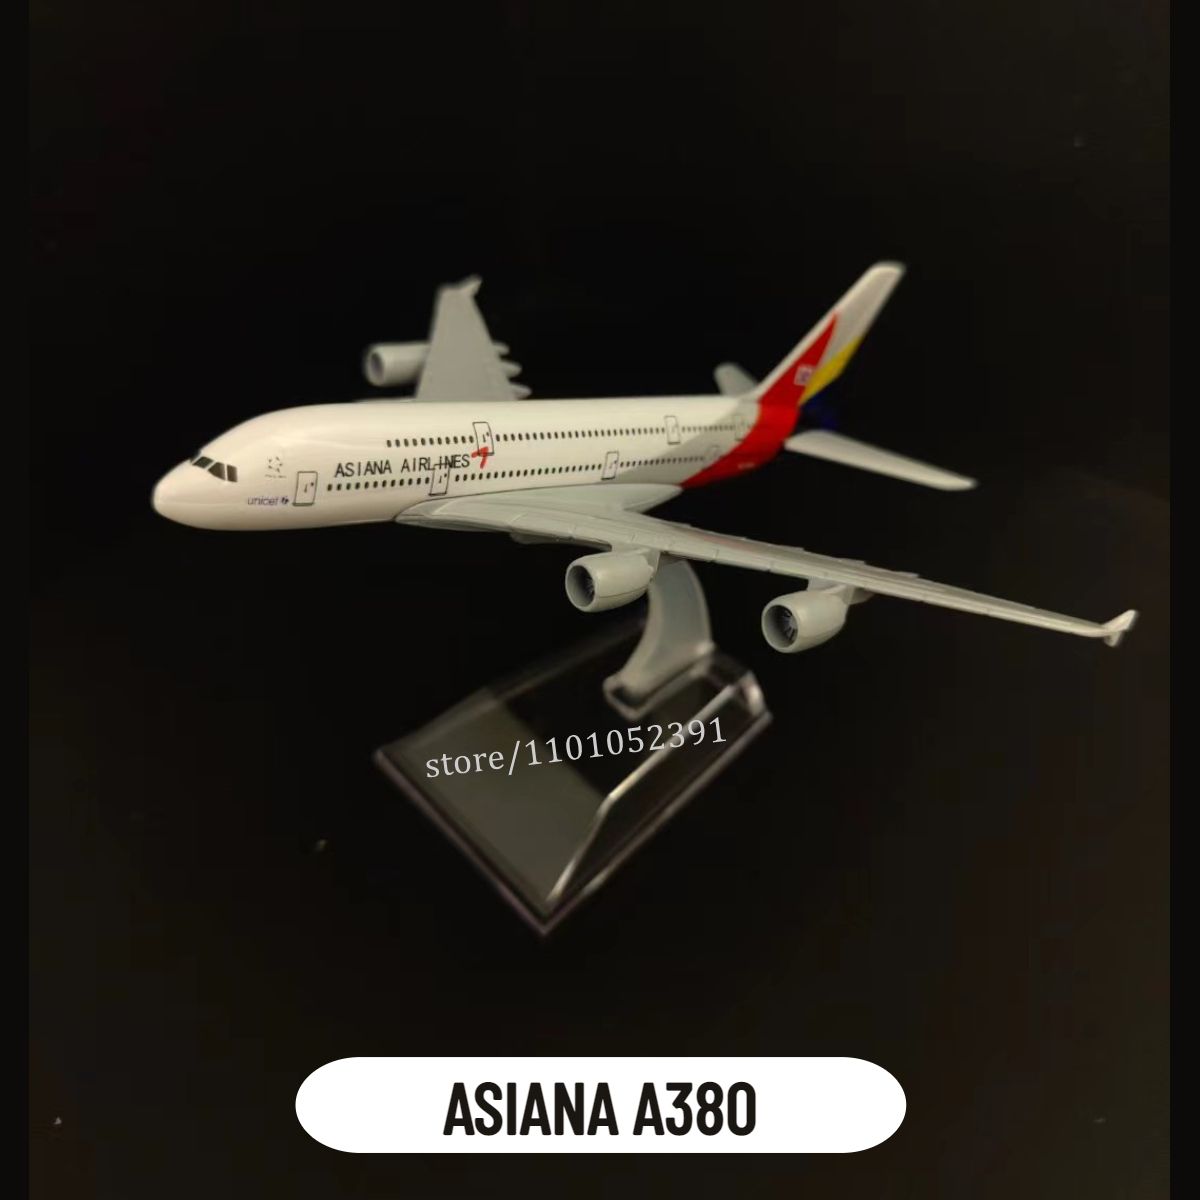 7. Asiana A380